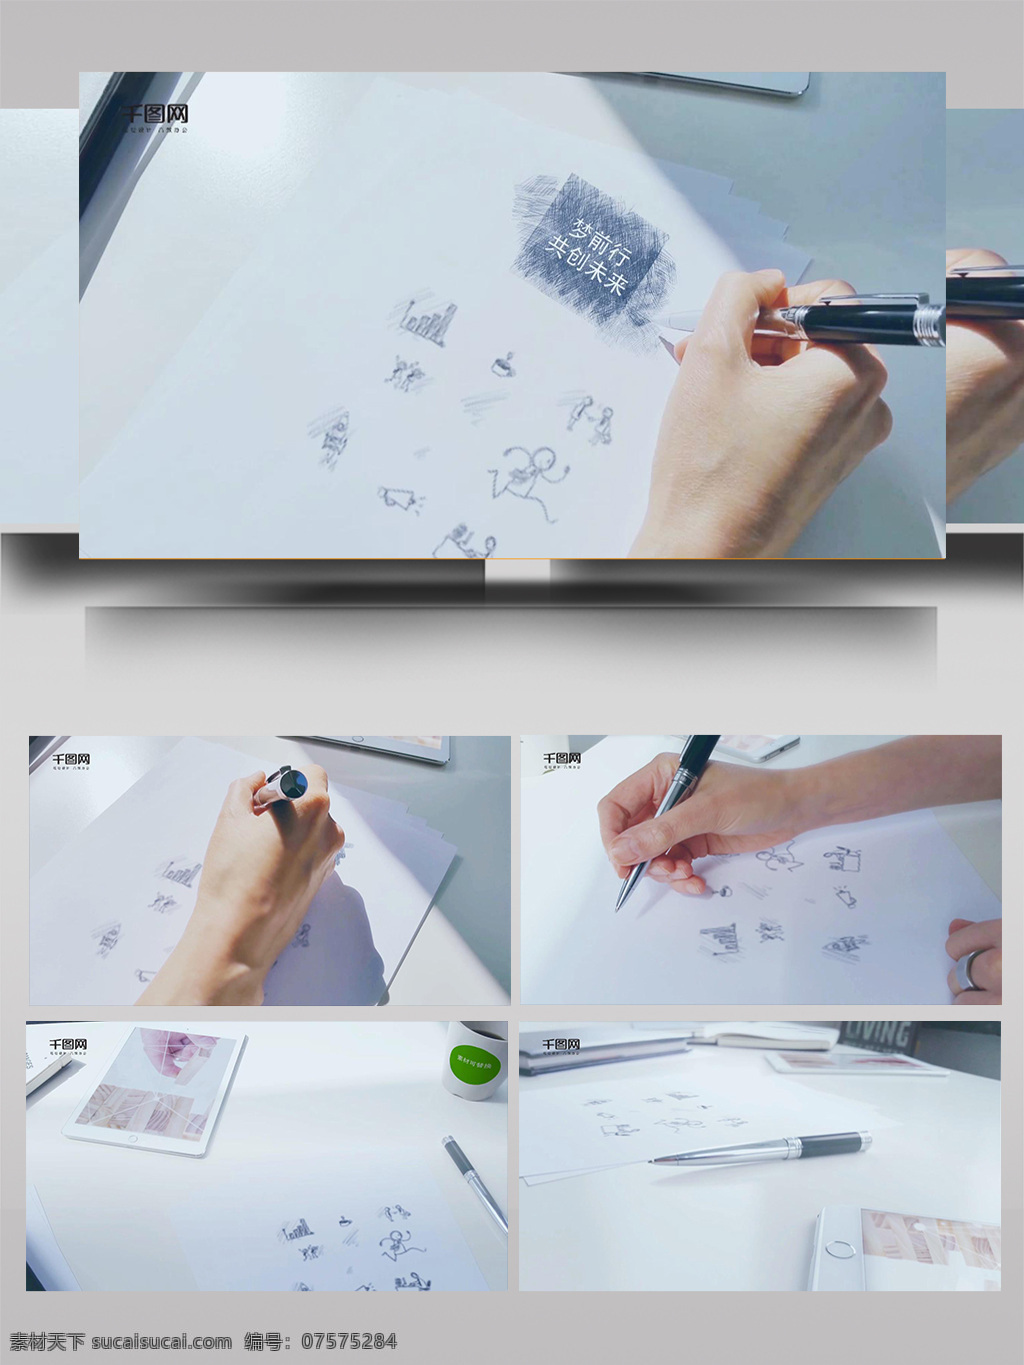 手 绘图 文水 彩 线条 变换 ae 模板 笔刷 照片 游戏 艺术 动画 记忆 颜料 画笔 卡通 纸张 二位 场景 视频 电子 水彩 小素材 转场 过渡